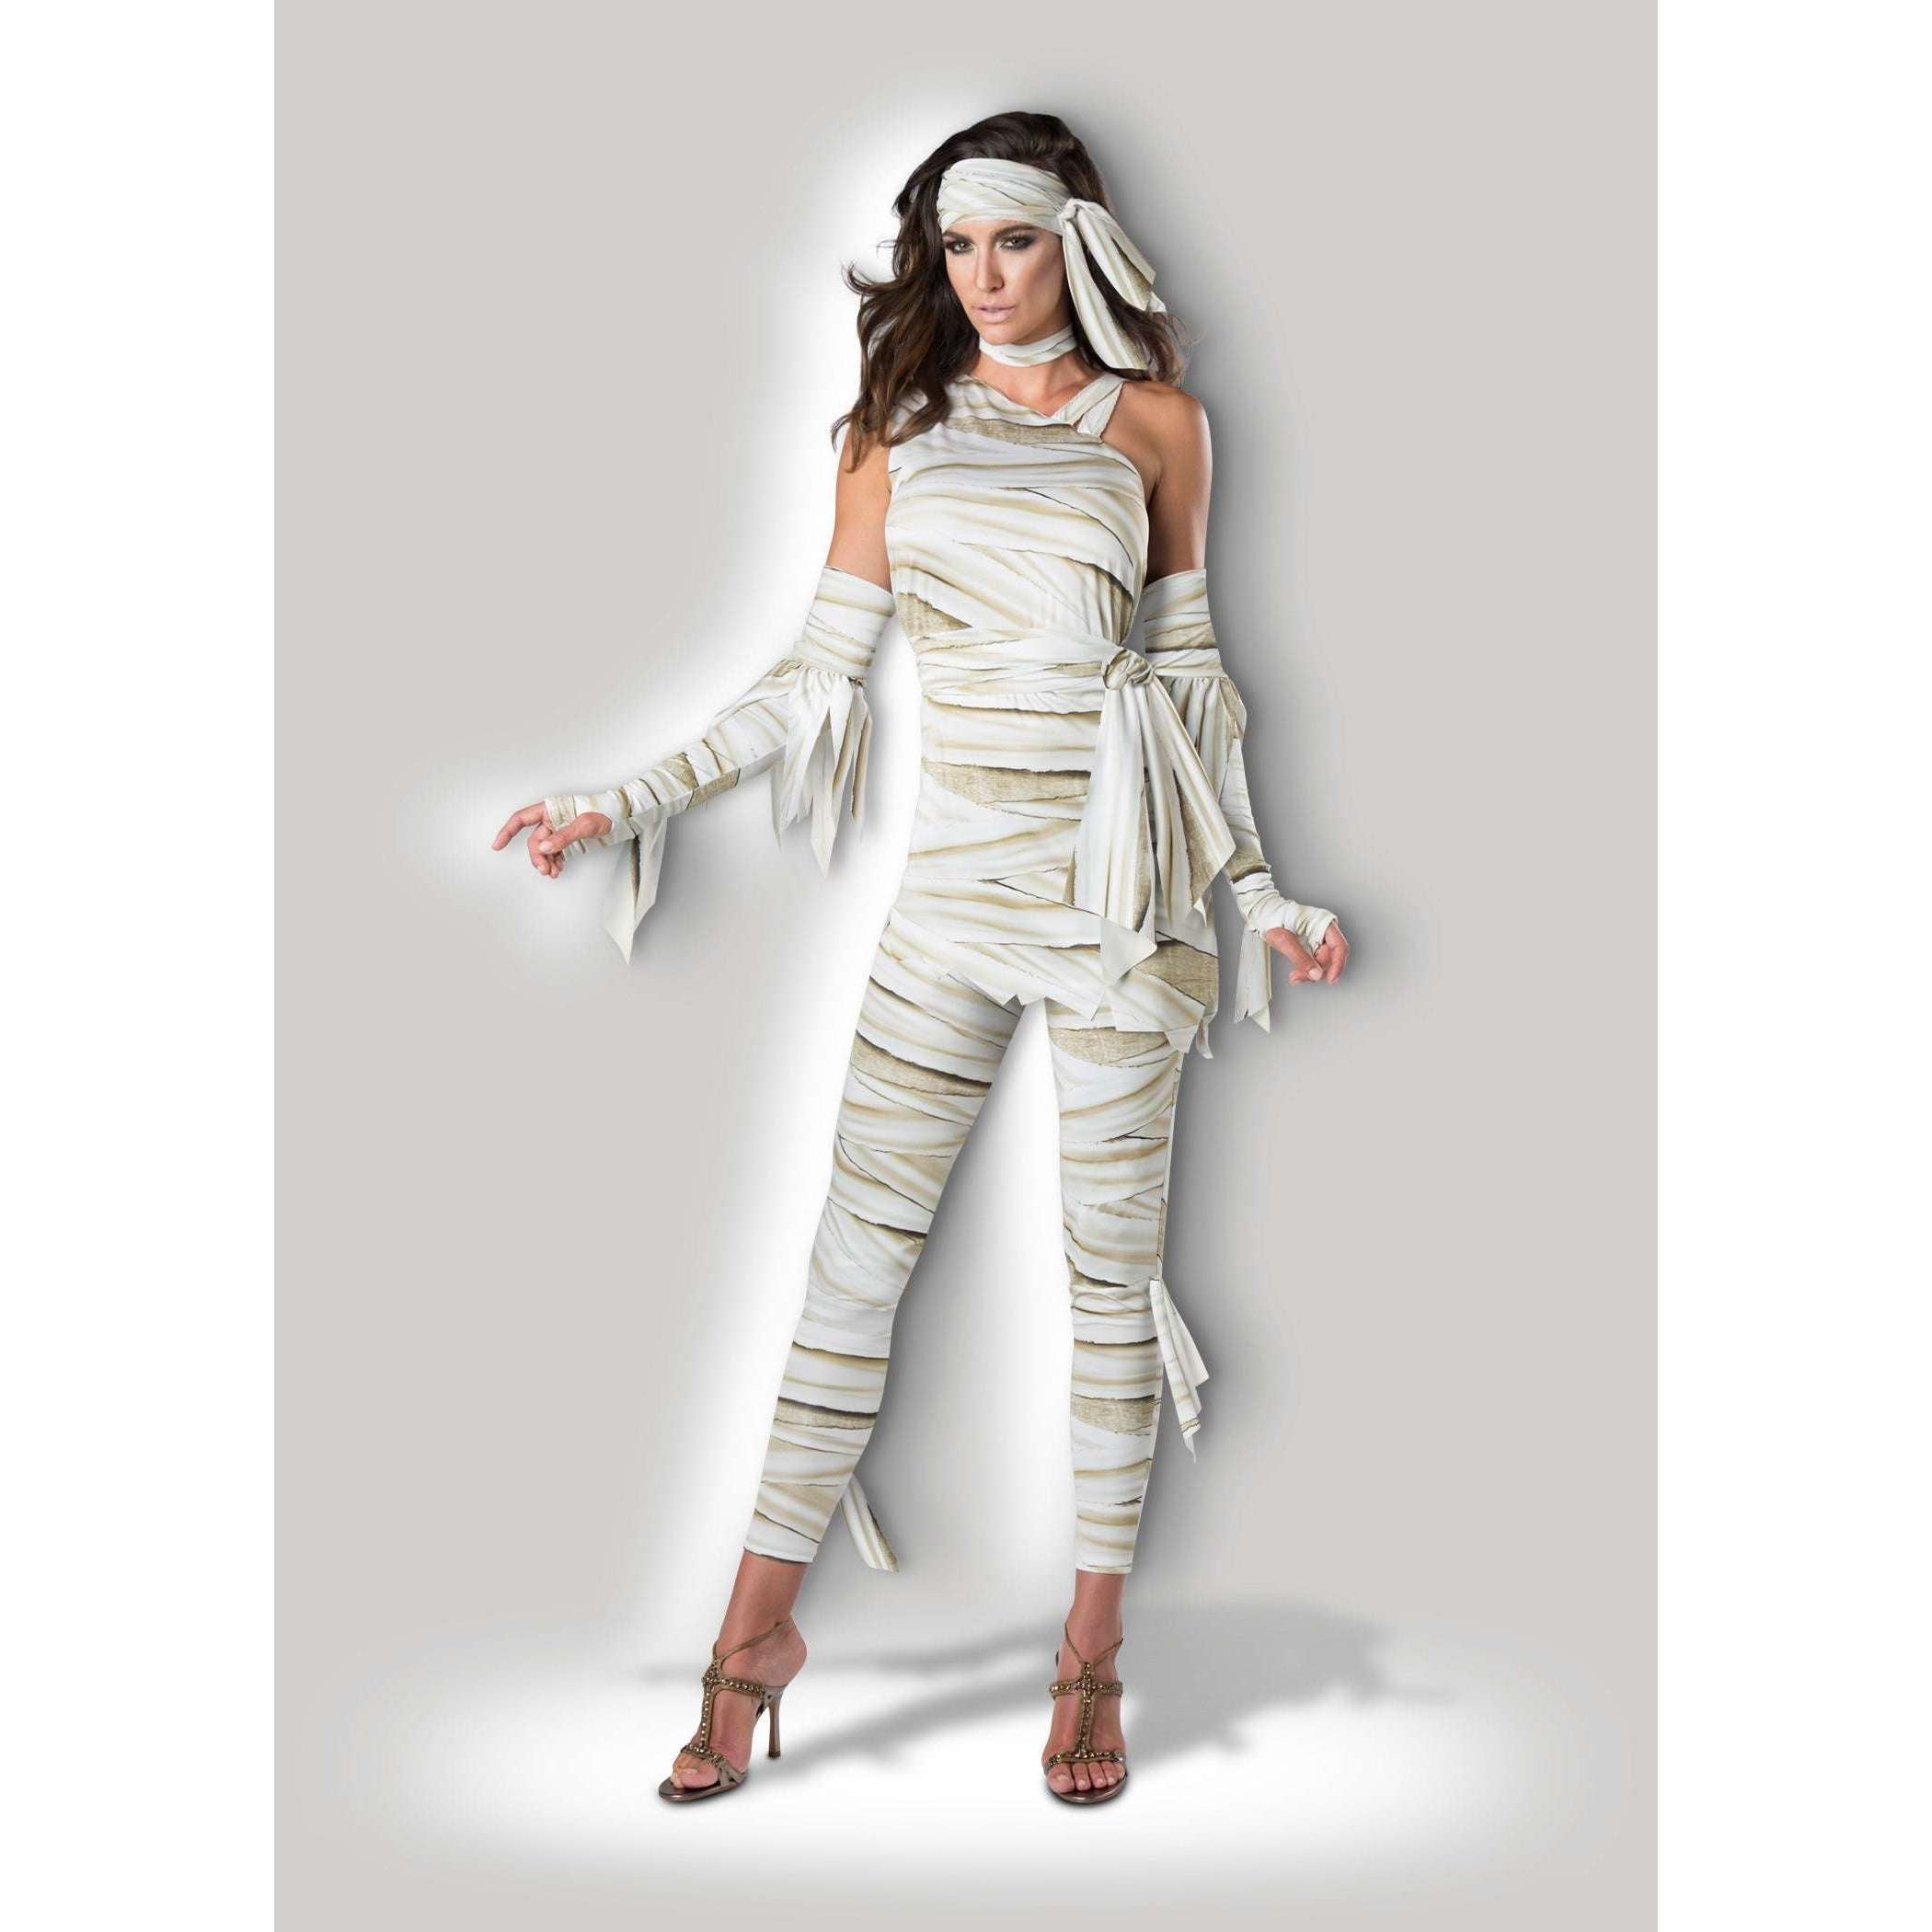 Stylish Mummy Wraps Adult Costume